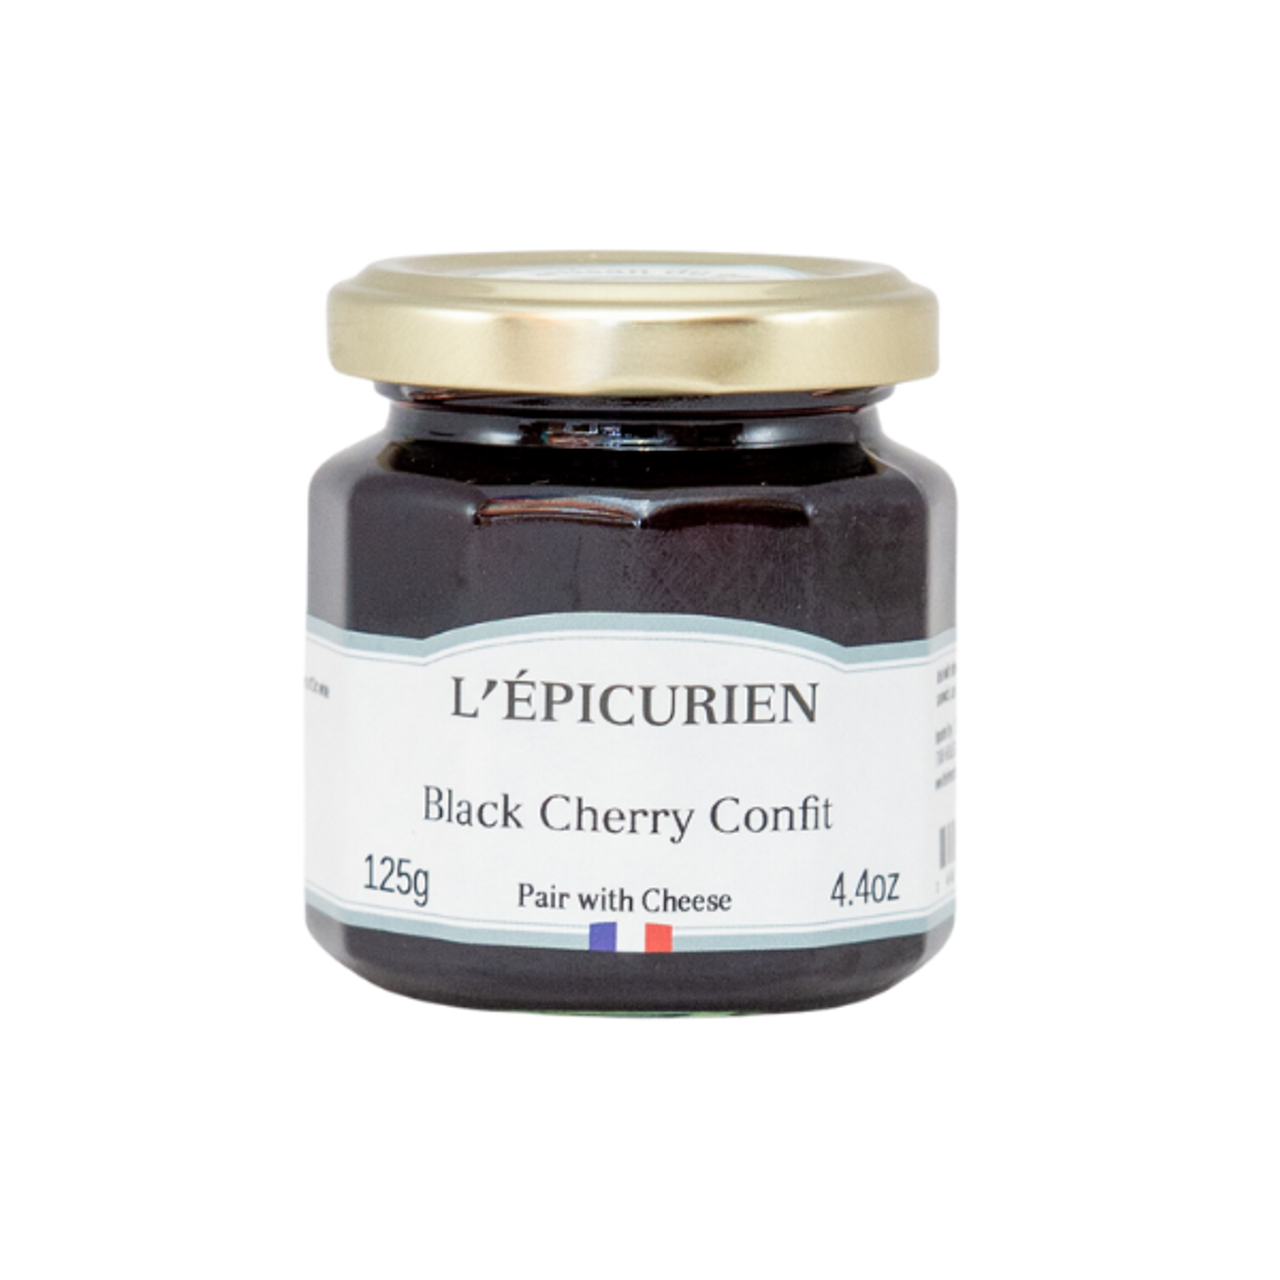 Black Cherry Confit